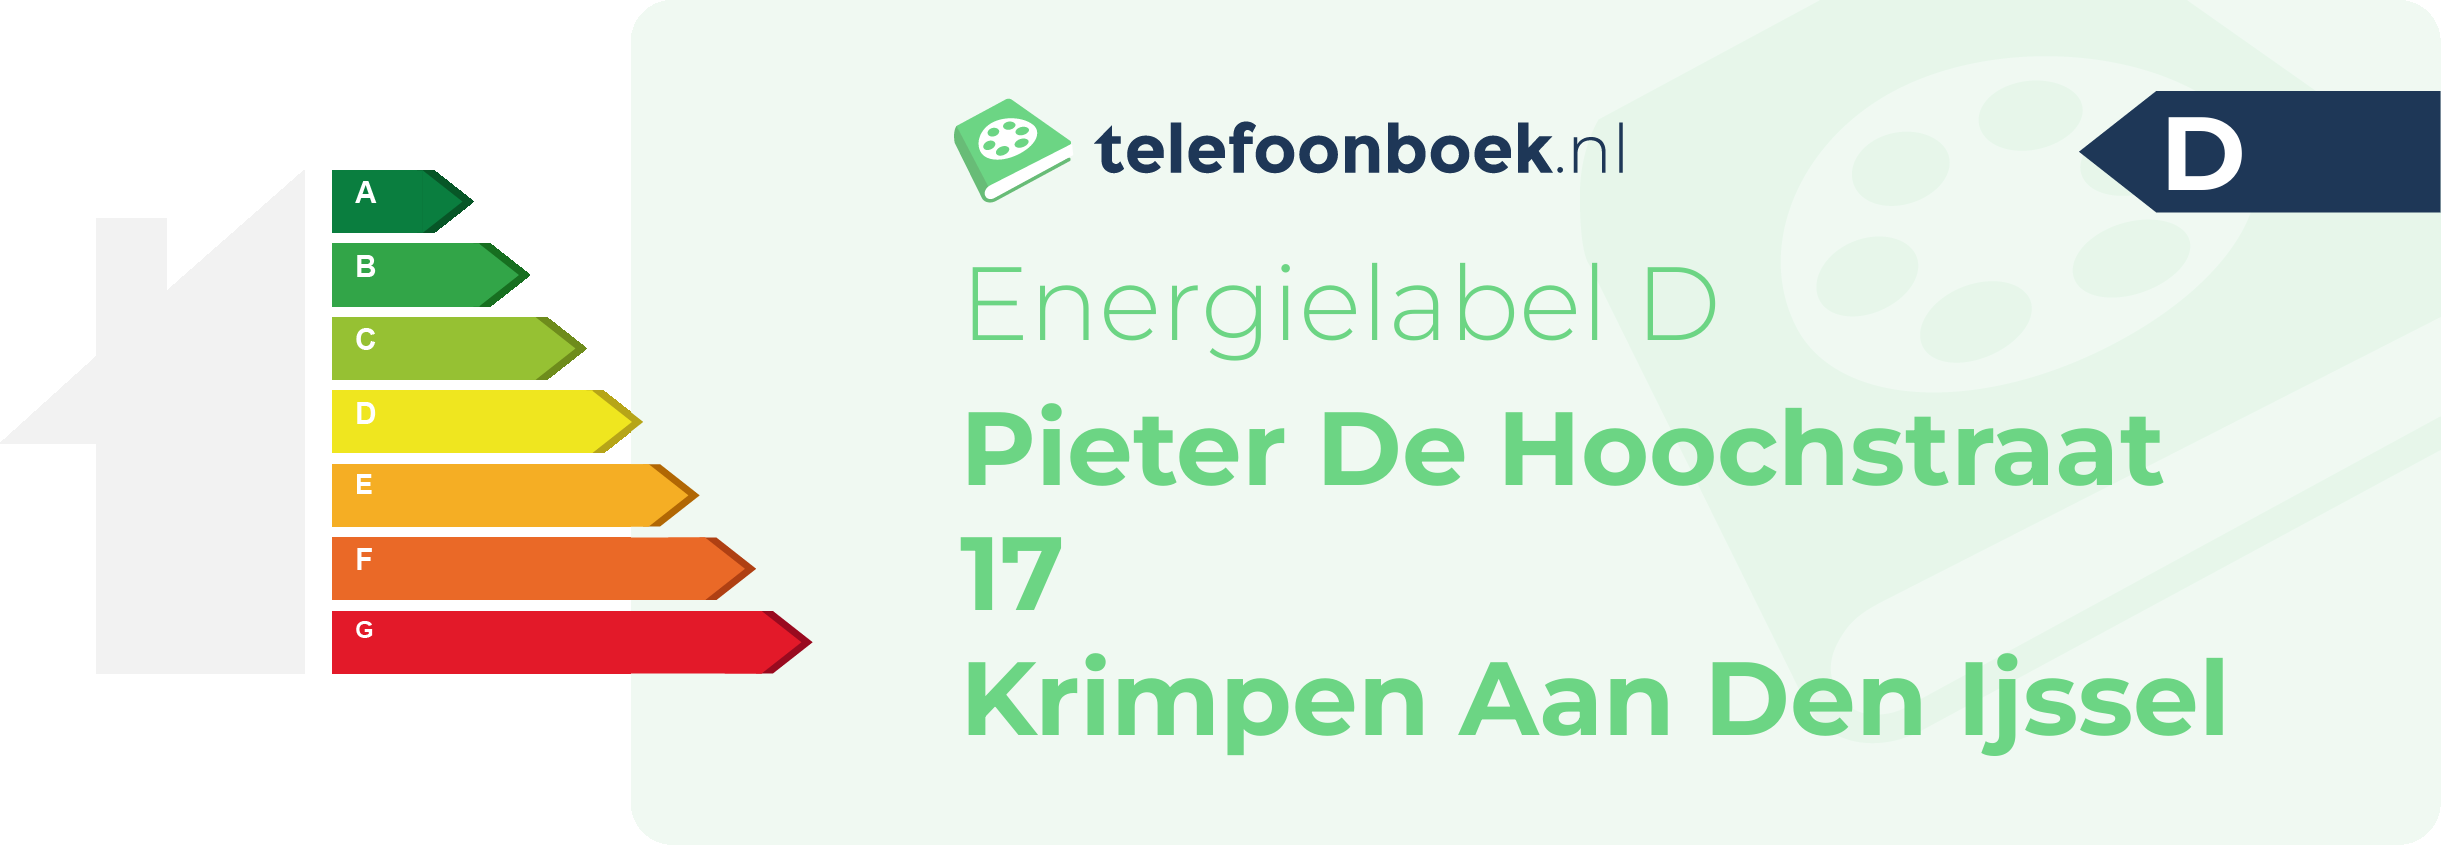 Energielabel Pieter De Hoochstraat 17 Krimpen Aan Den Ijssel